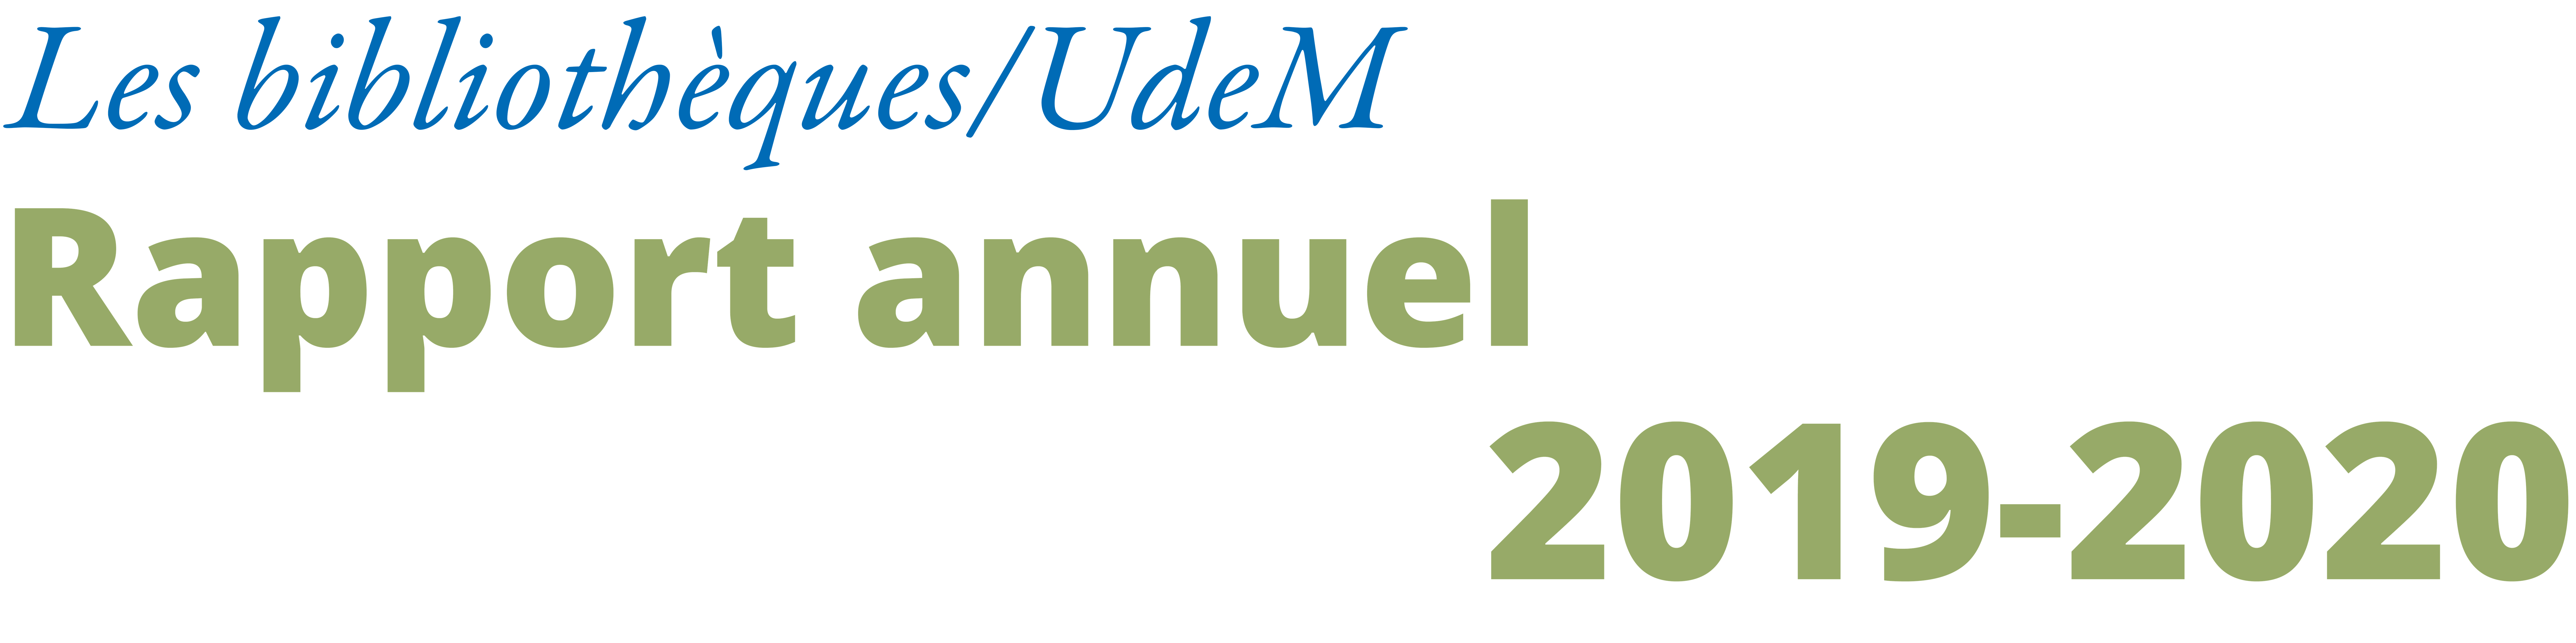 Rapport annuel 2019-2020 des bibliothèques de l’UdeM